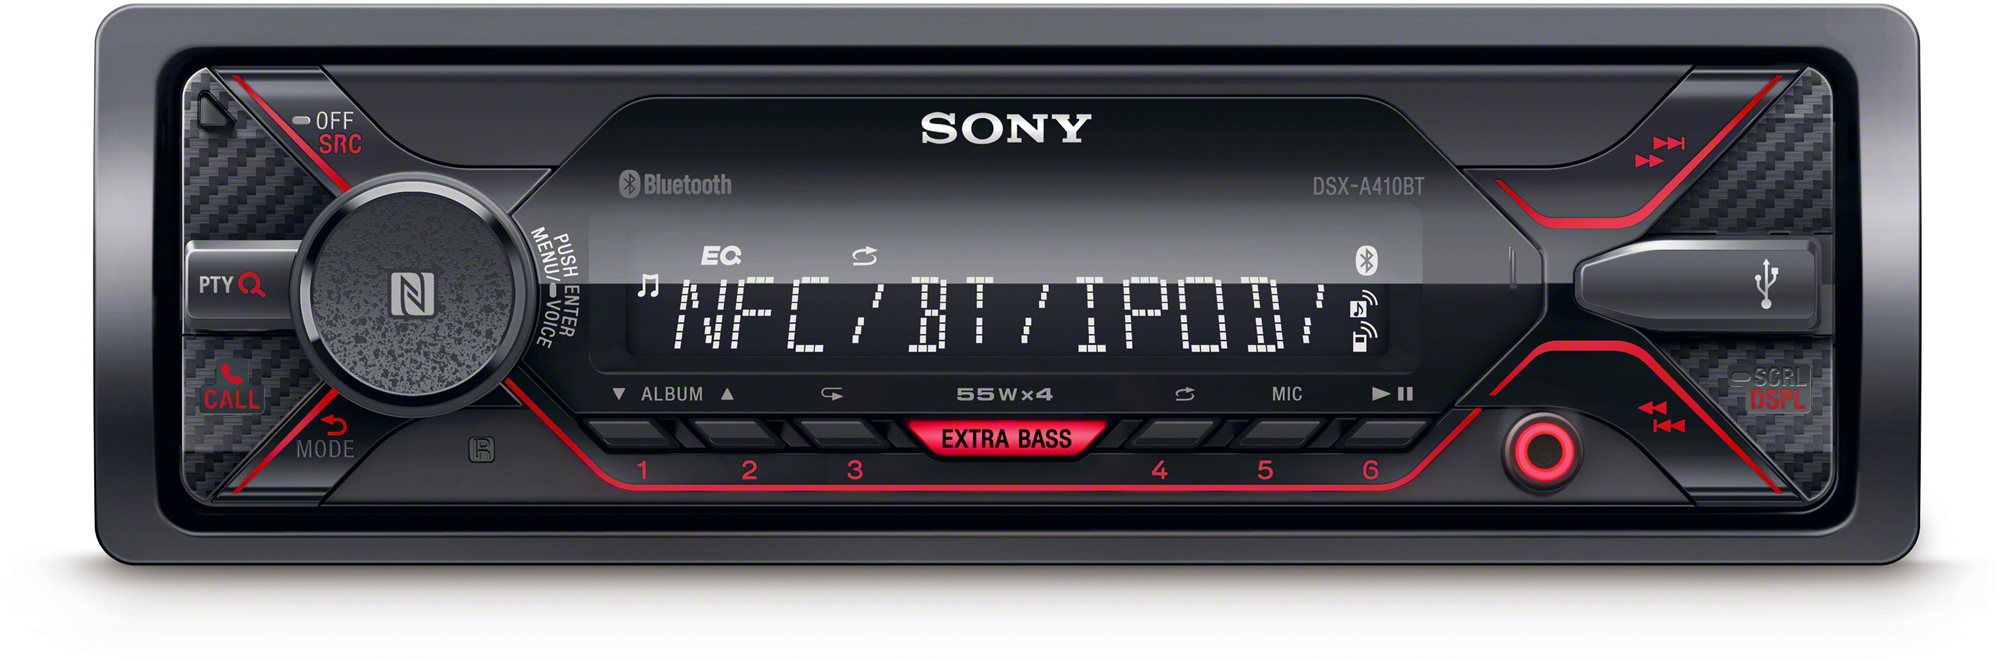 Autórádió Sony DSX-A410BT